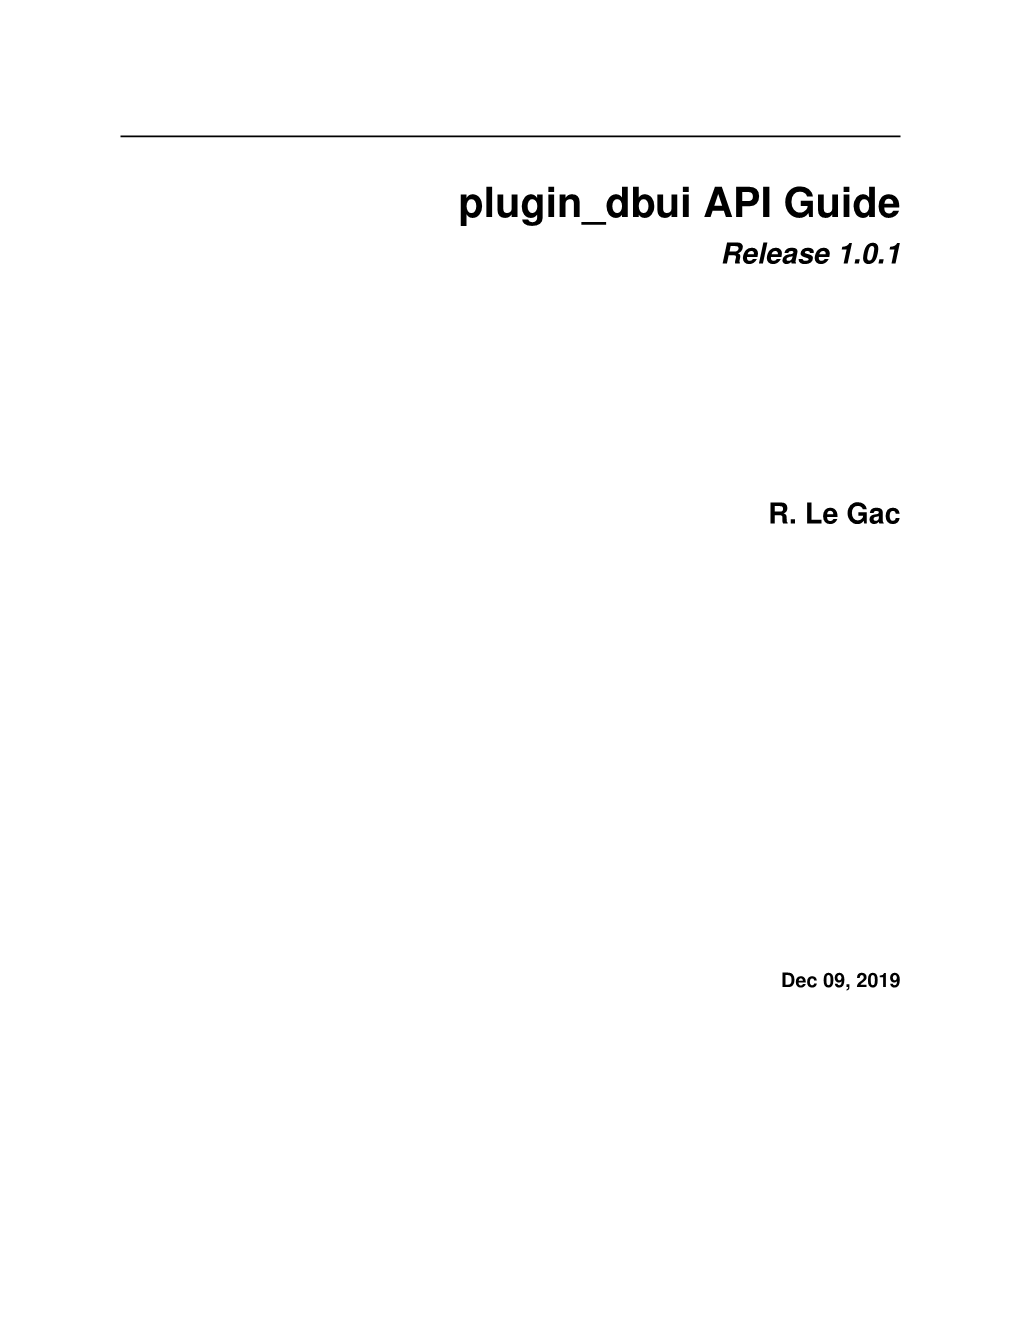 Plugin Dbui API Guide Release 1.0.1